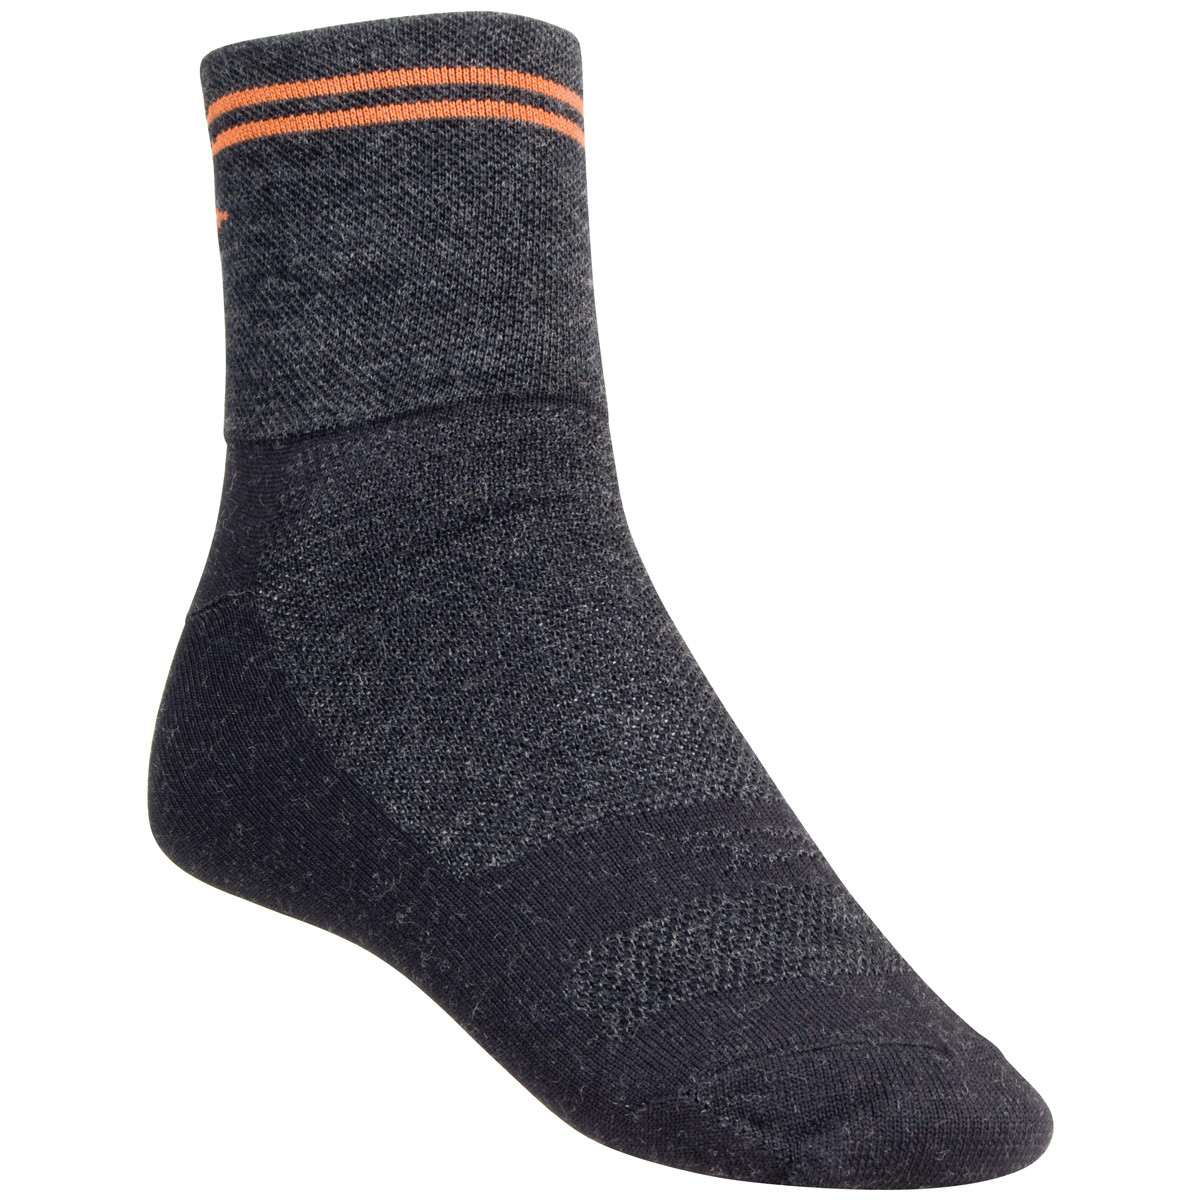 Wooleator HT Argyle Socks Black/Orange